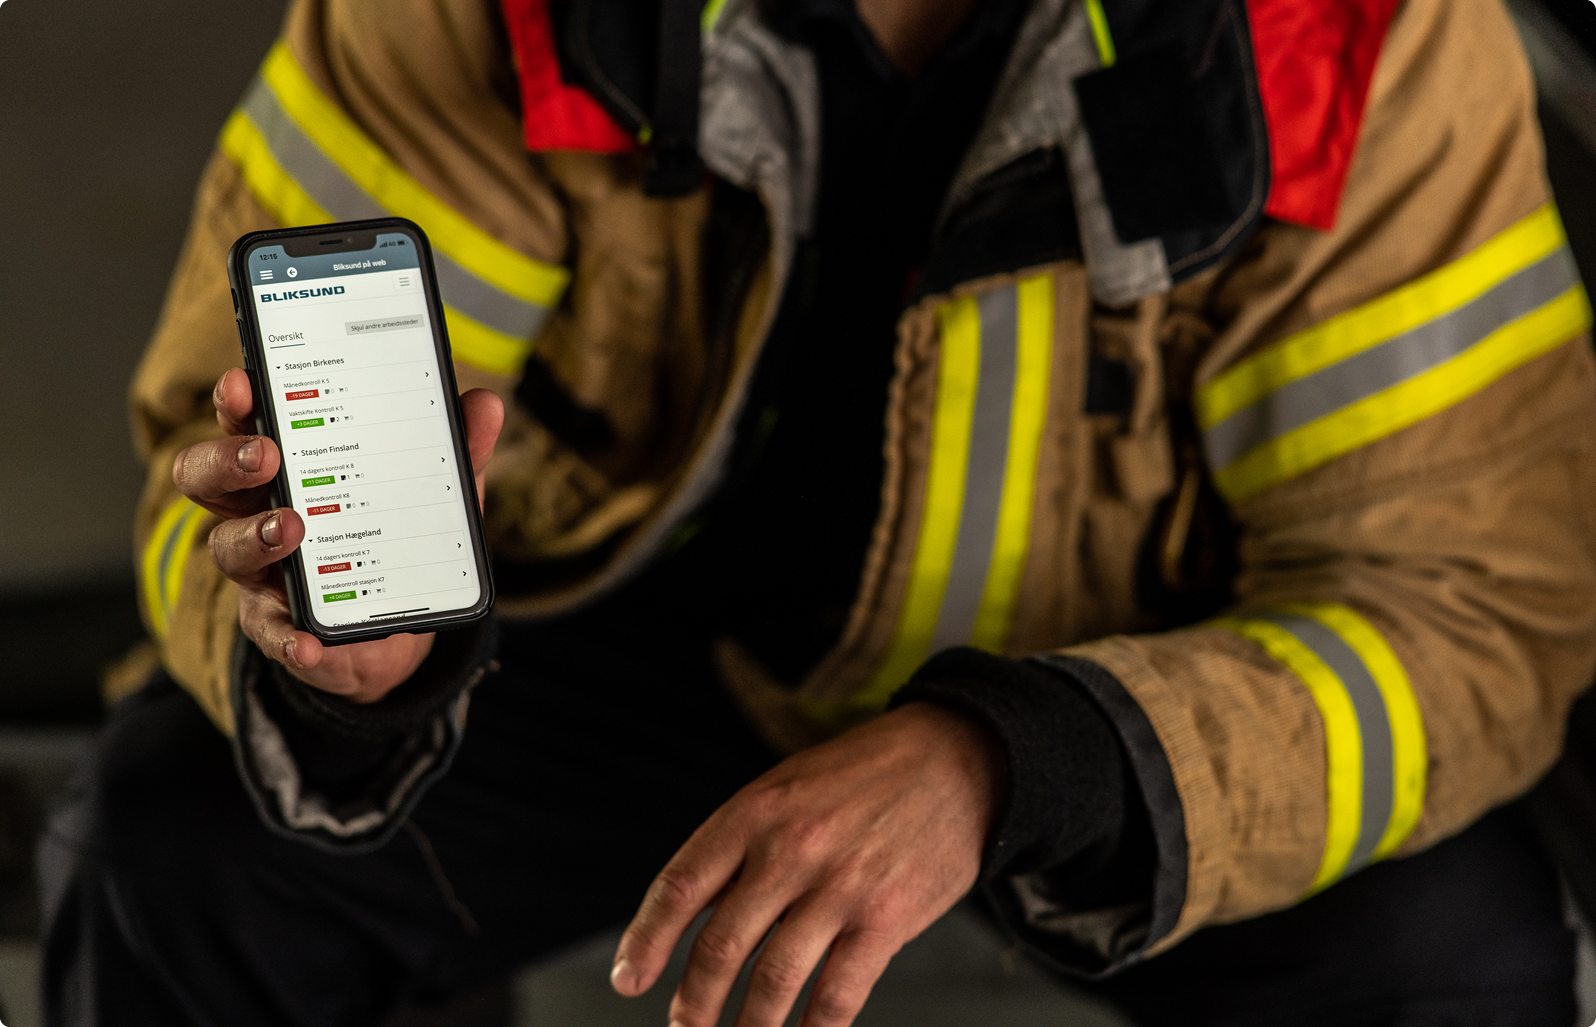 Brandmand viser det operationelle fagsystem GRID frem på en smartphone